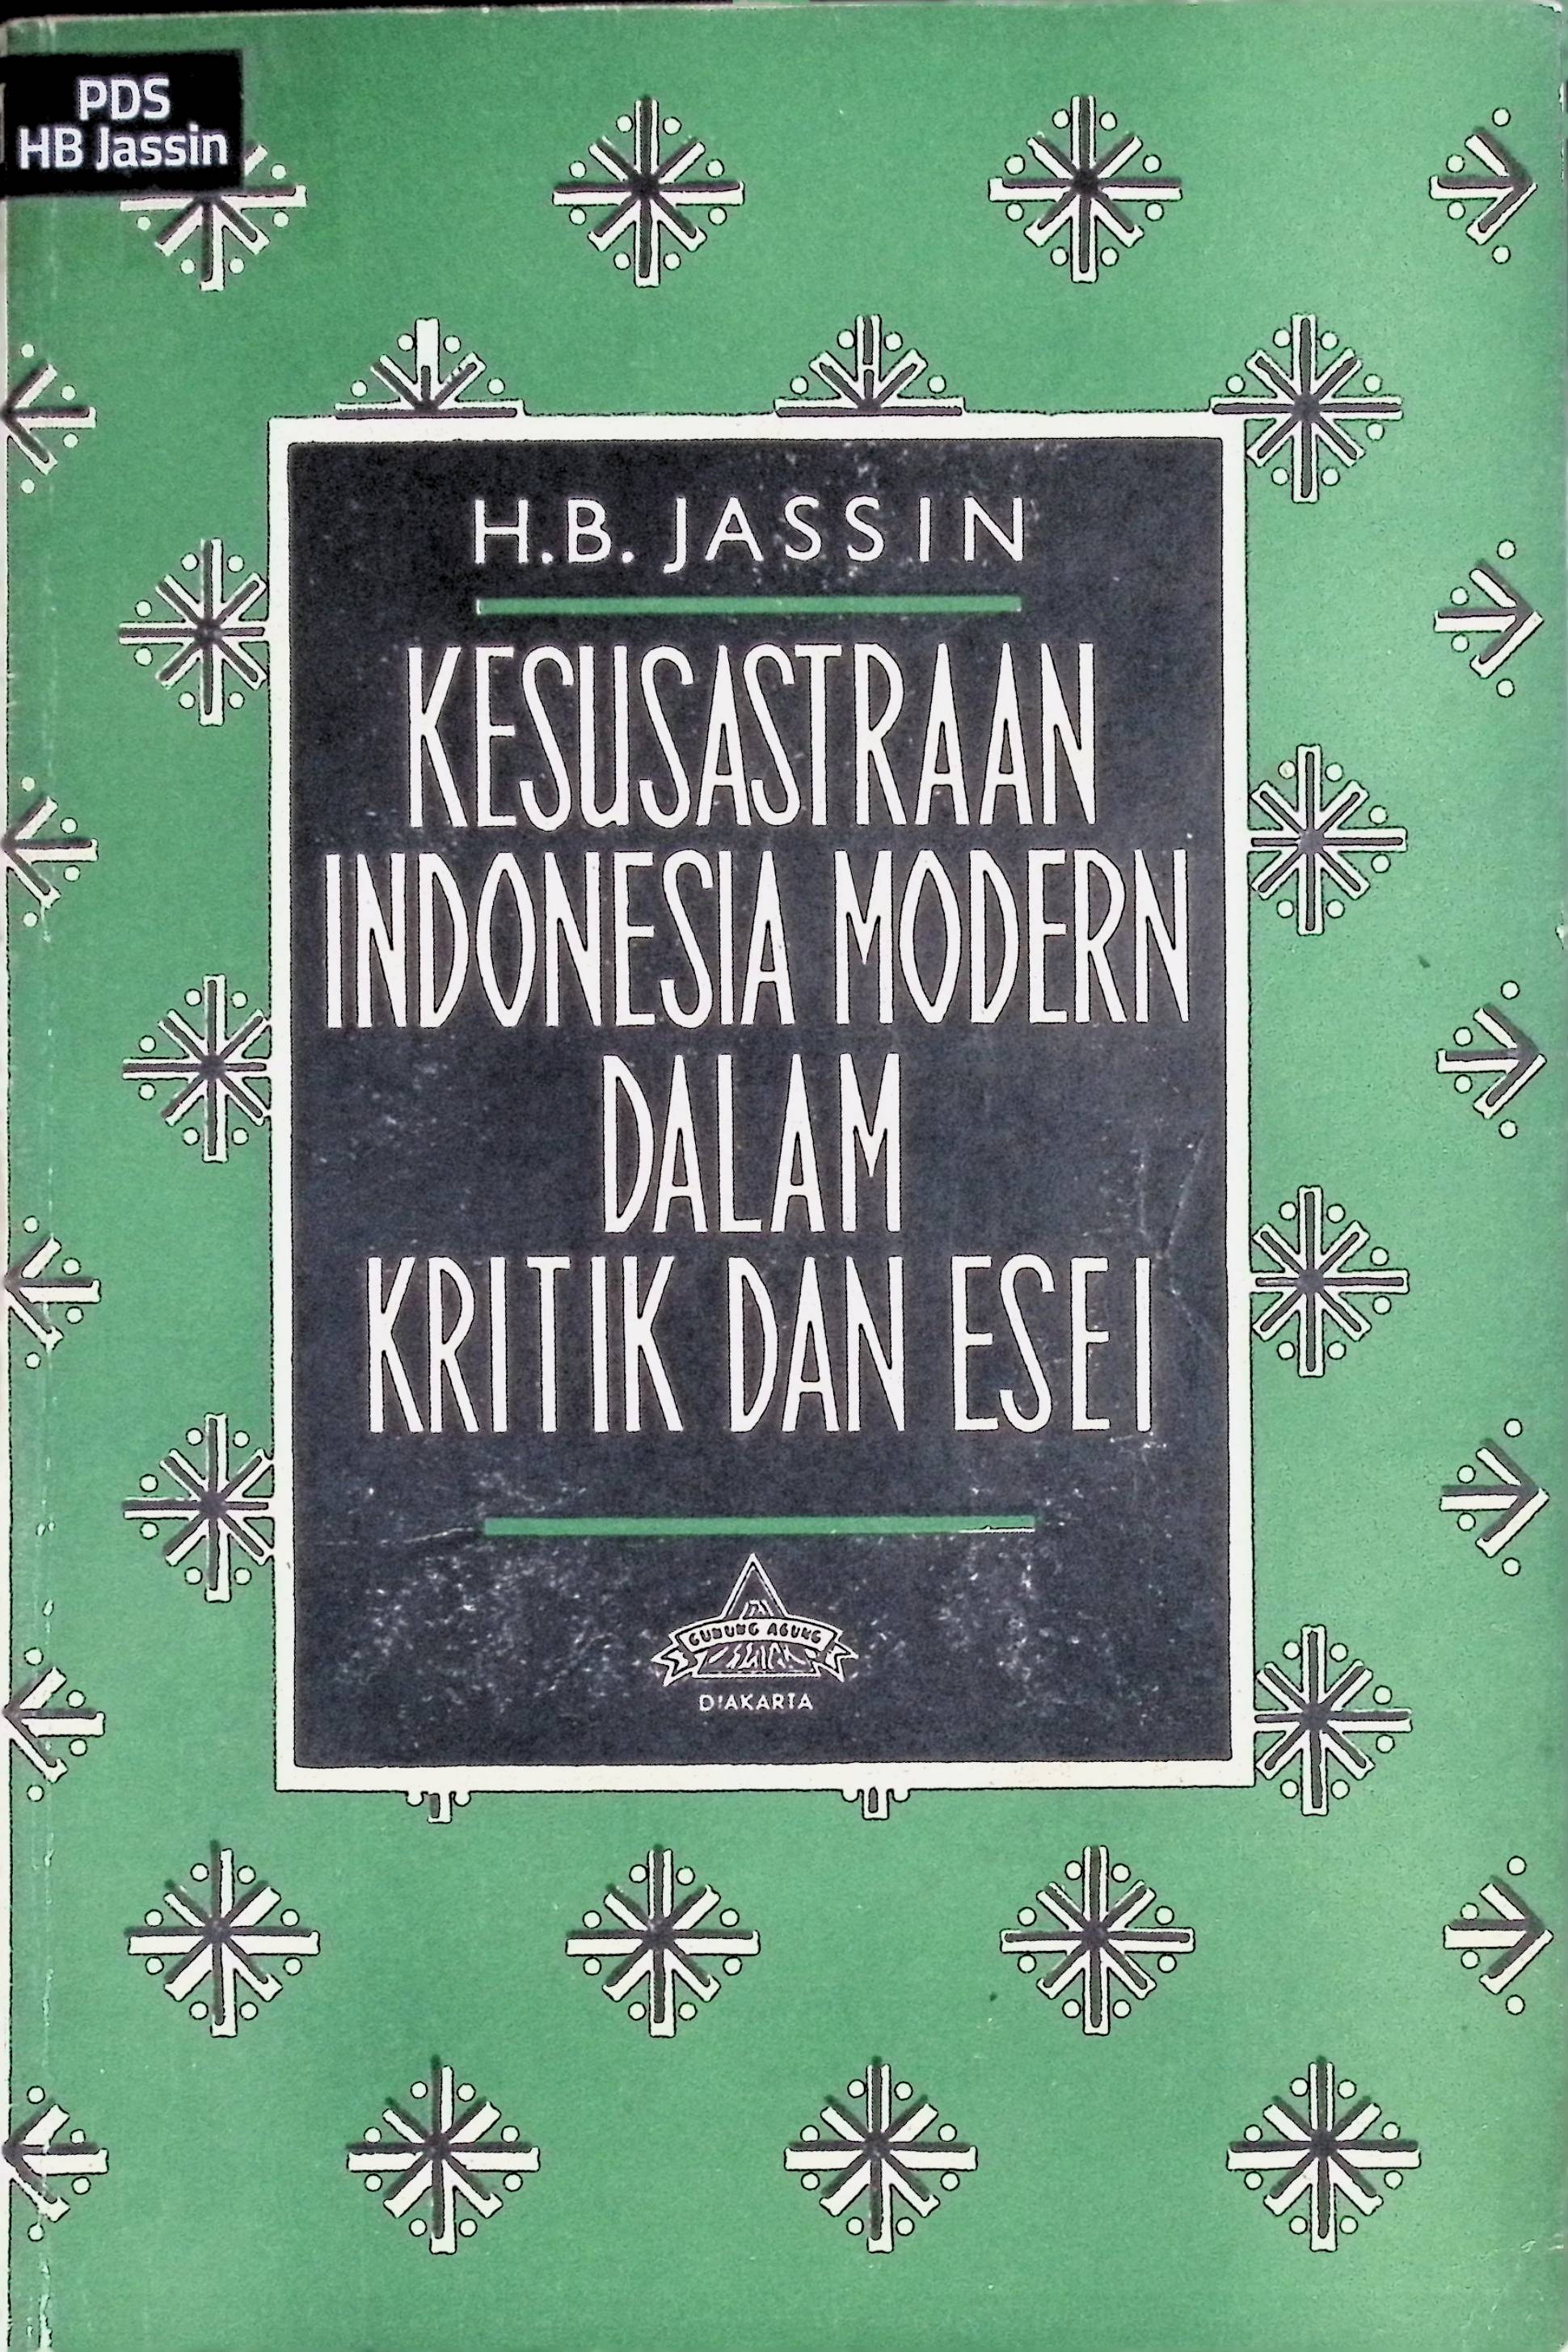 Kesusastraan Indonesia Modern dalam Kritik dan Esei II